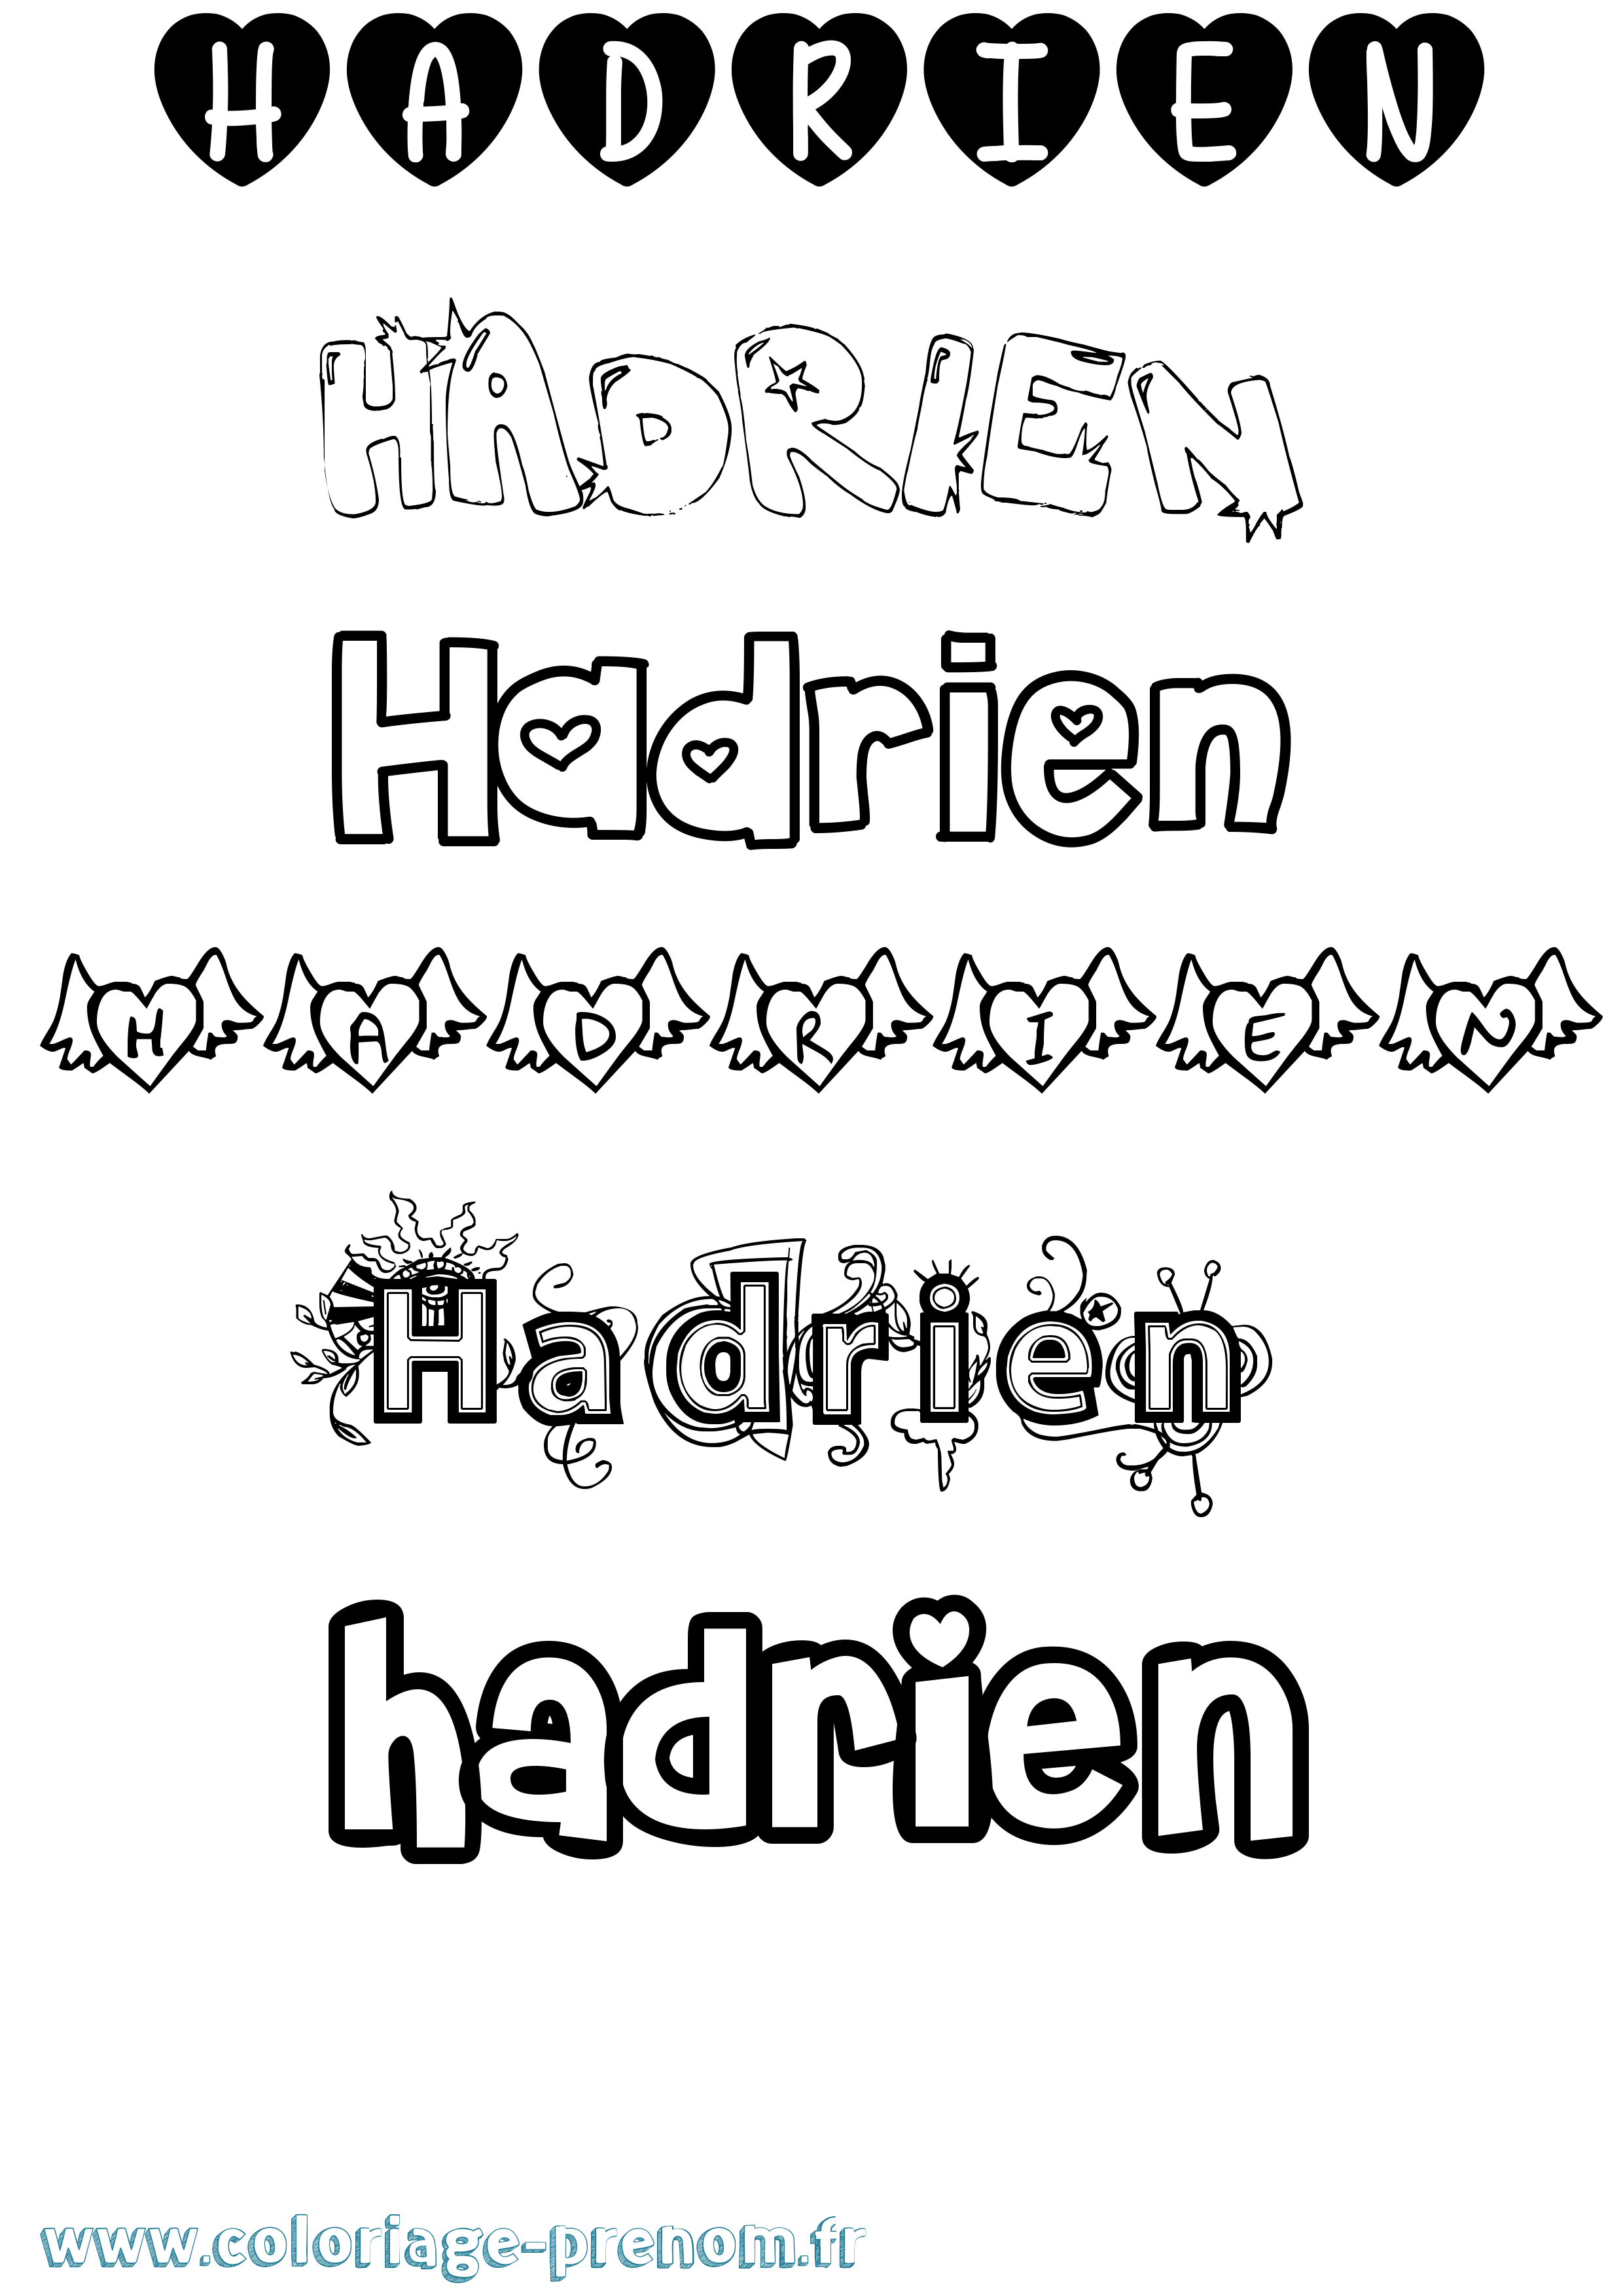 Coloriage prénom Hadrien